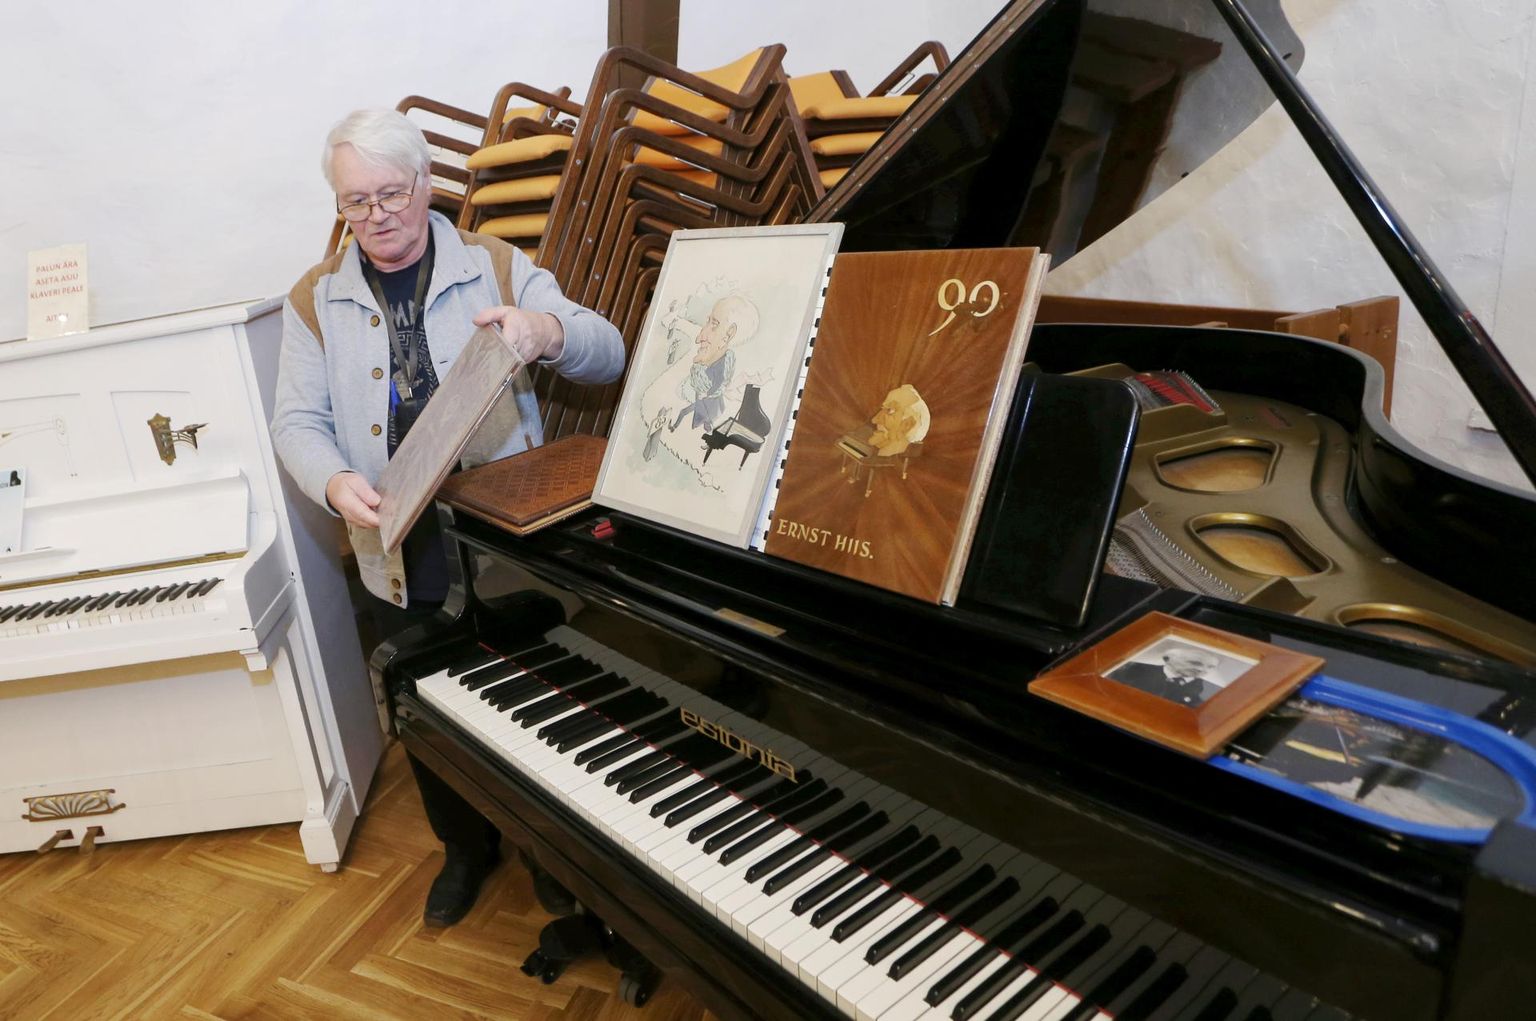 Alo Põldmäe tutvustab mullu sügisel Eesti klaverimuuseumi Luunja filiaalis muuseumile tehtud väärtuslikku annetust.